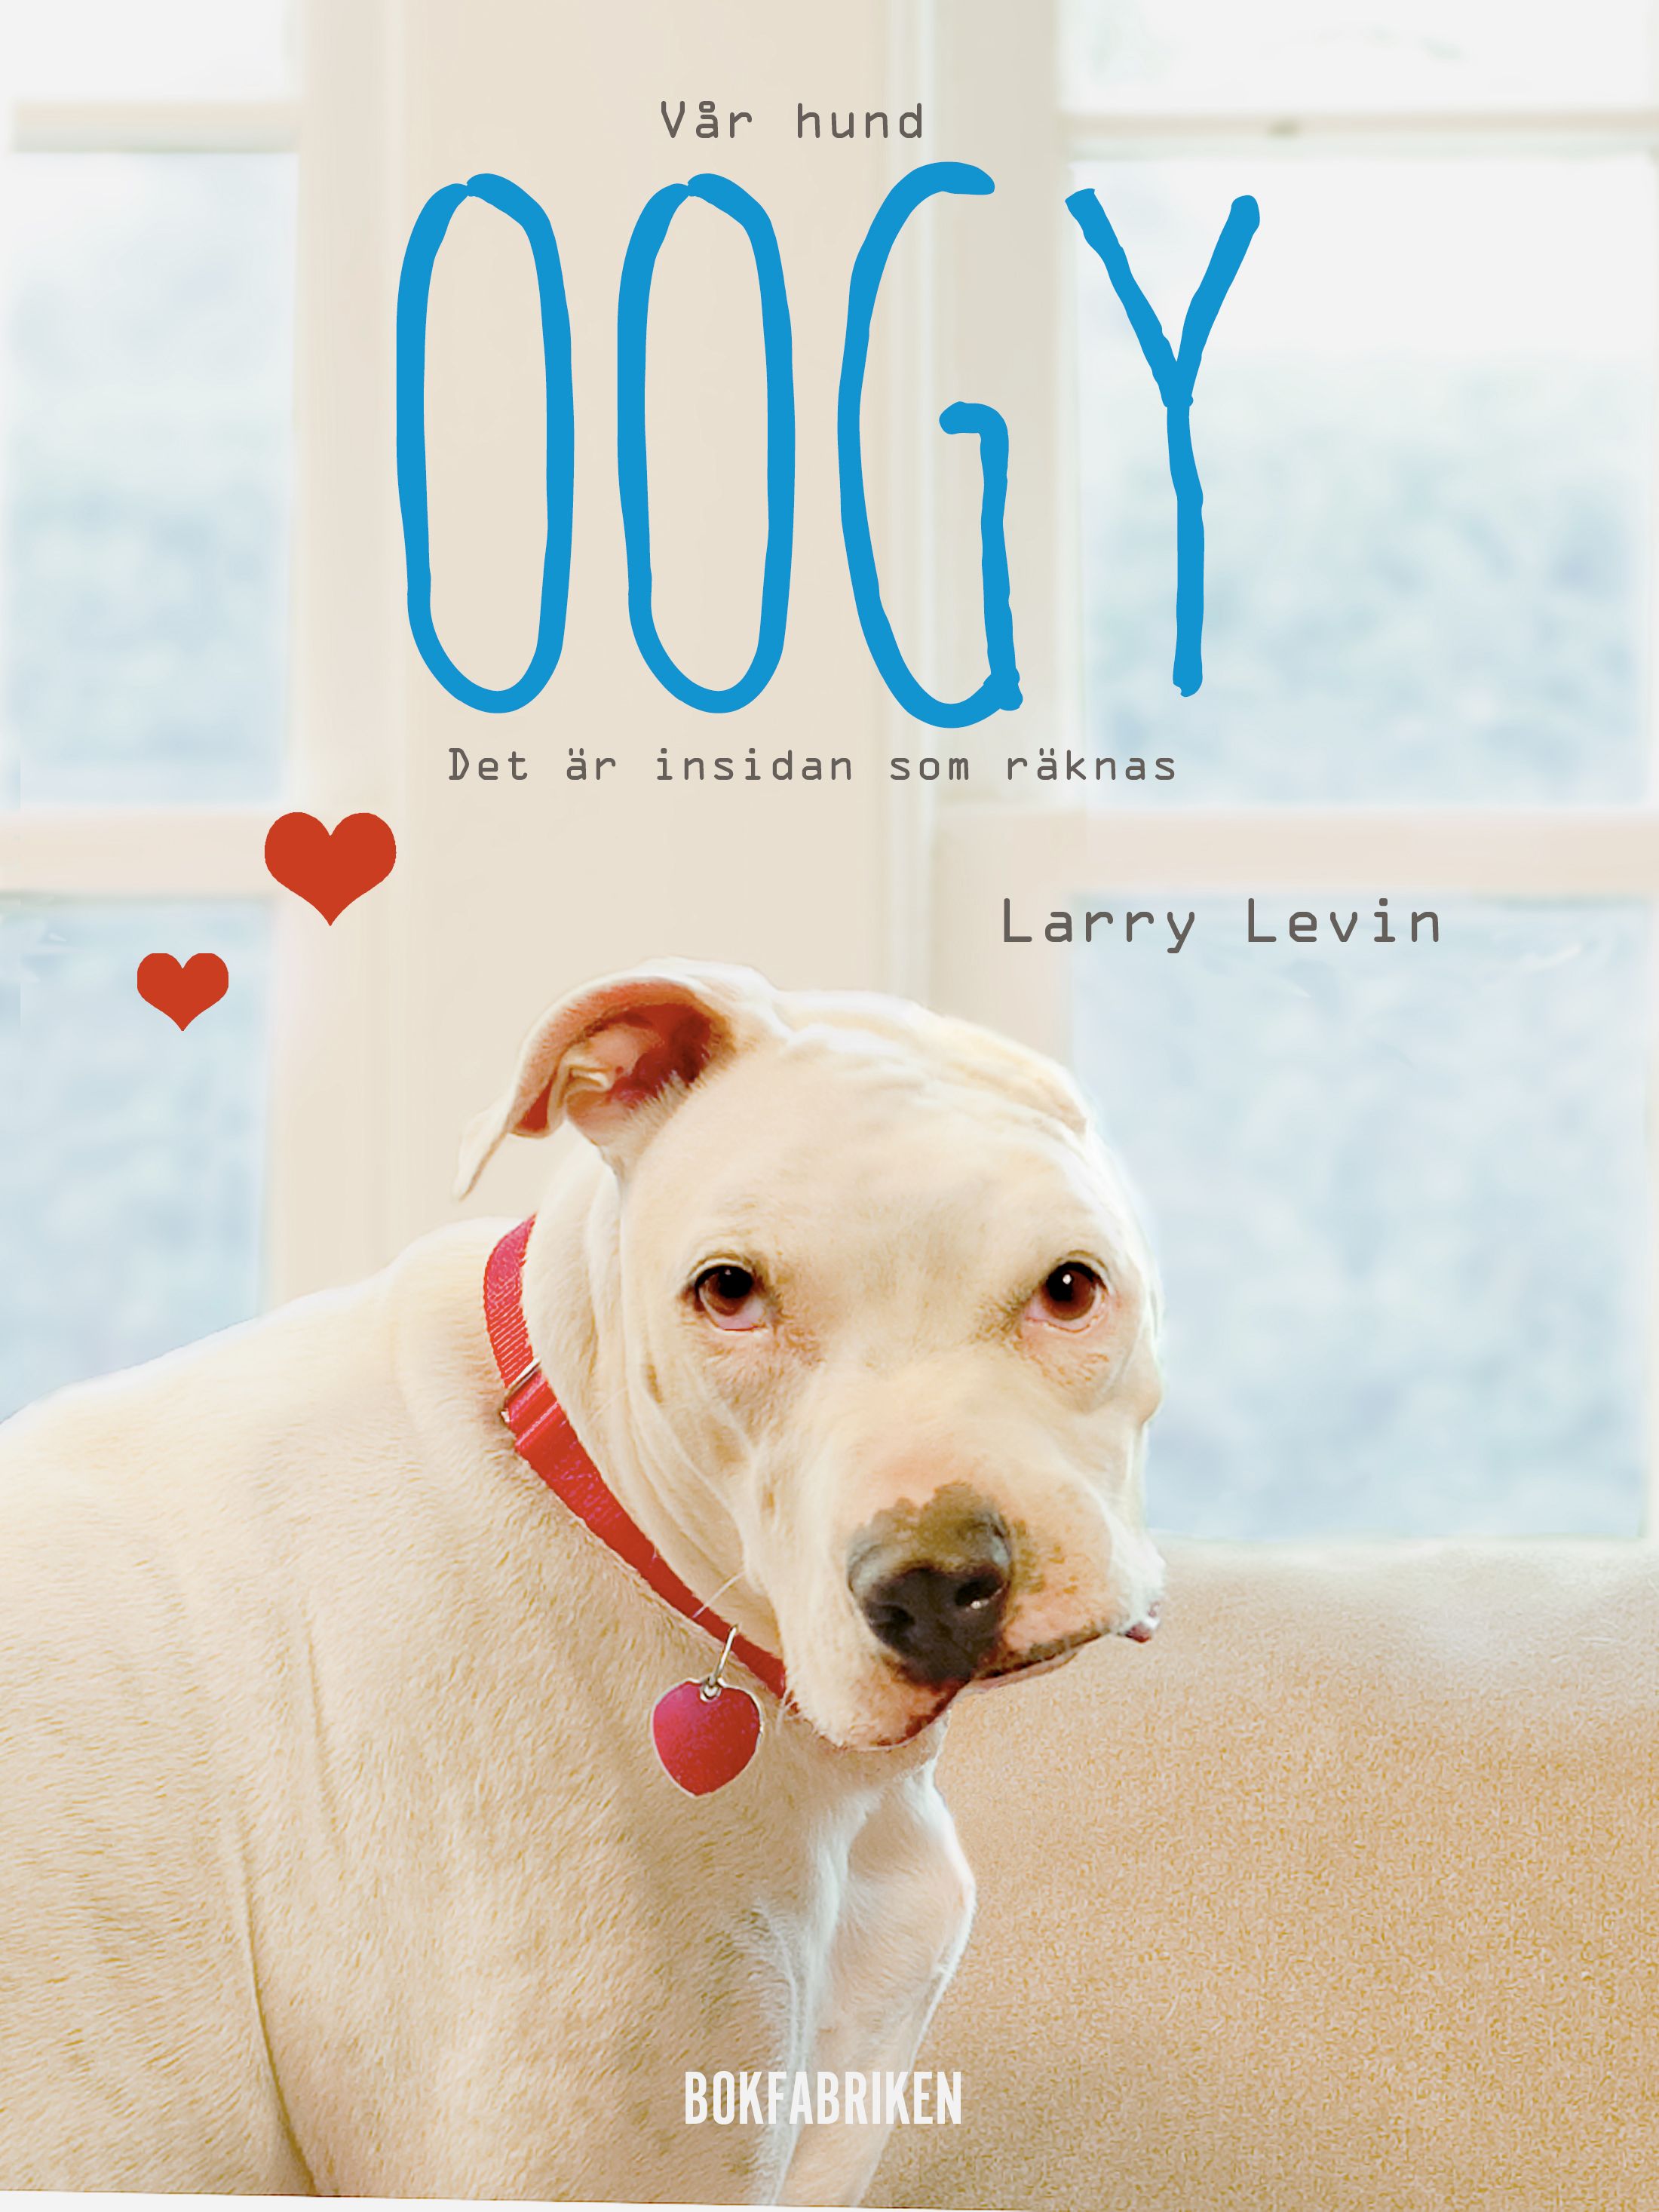 Vår hund Oogy : Det är insidan som räknas, e-bok av Larry Levin